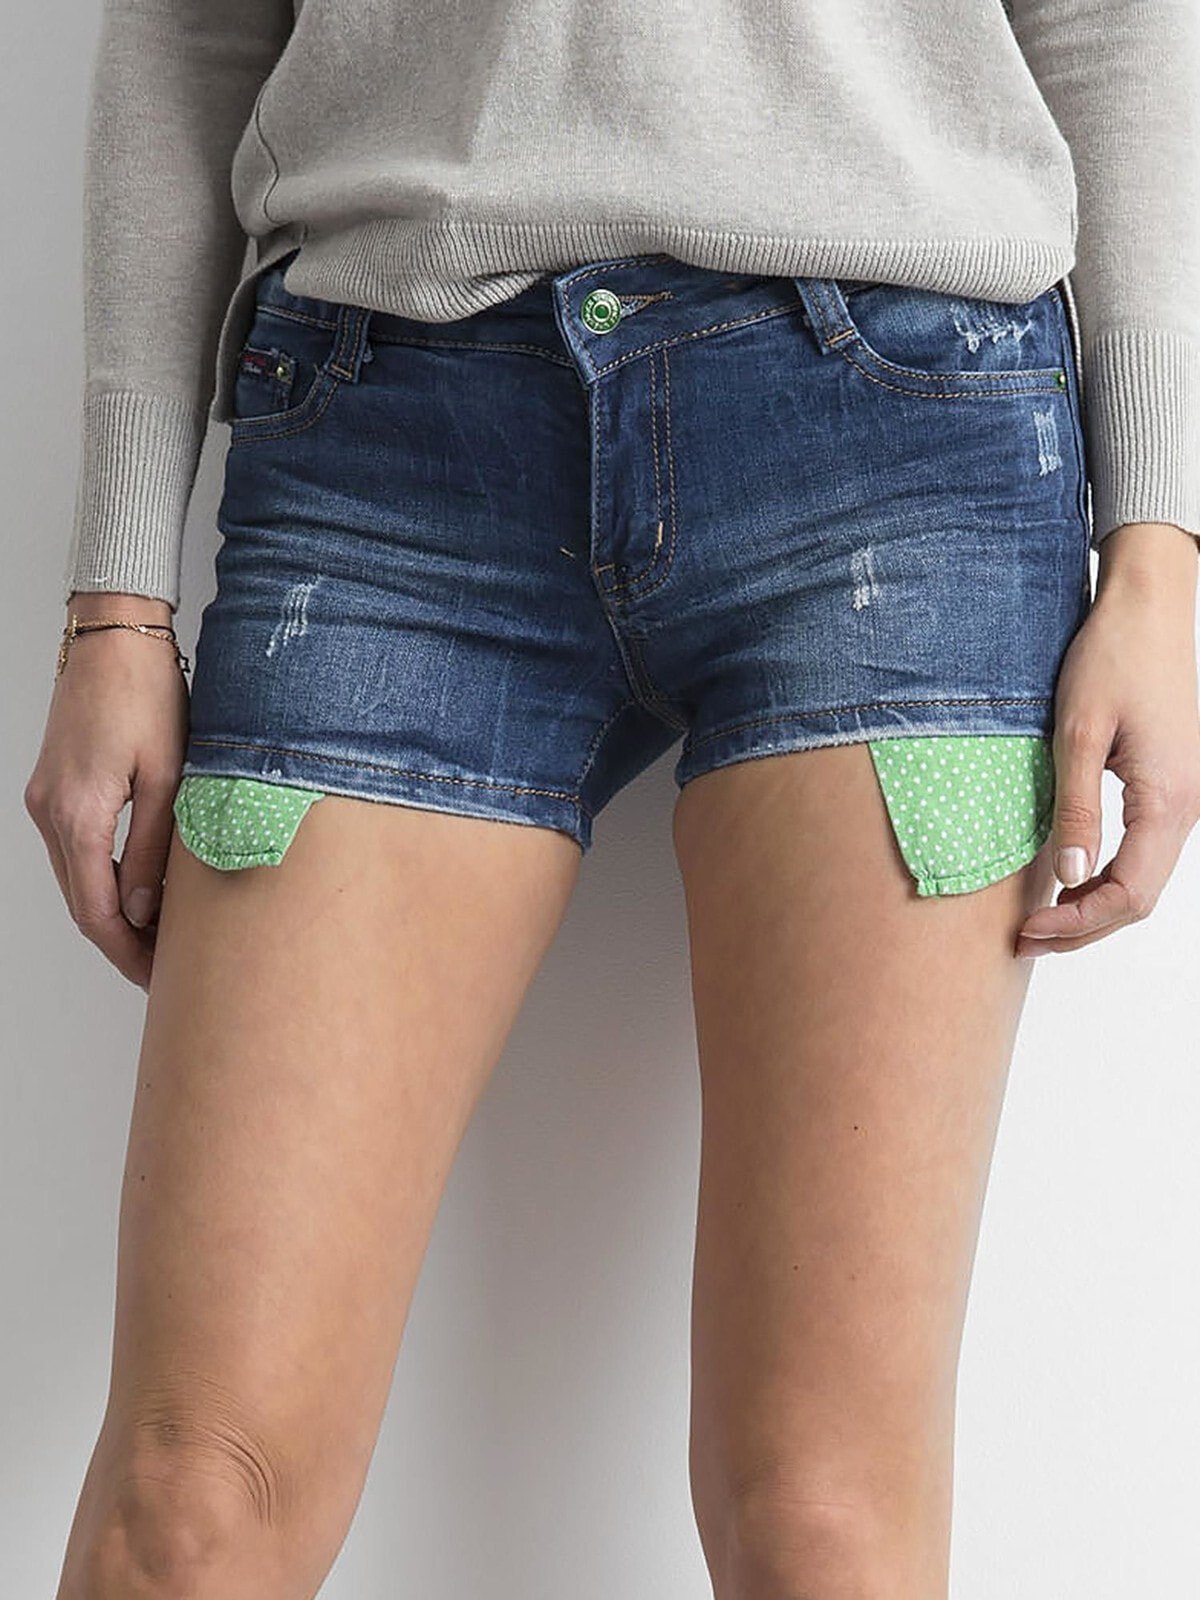 Женские джинсовые мини шорты Factory Price , цветные карманы шортыV43576392 купить по выгодной цене от 1493 руб. в интернет-магазинеmarket.litemf.com с доставкой